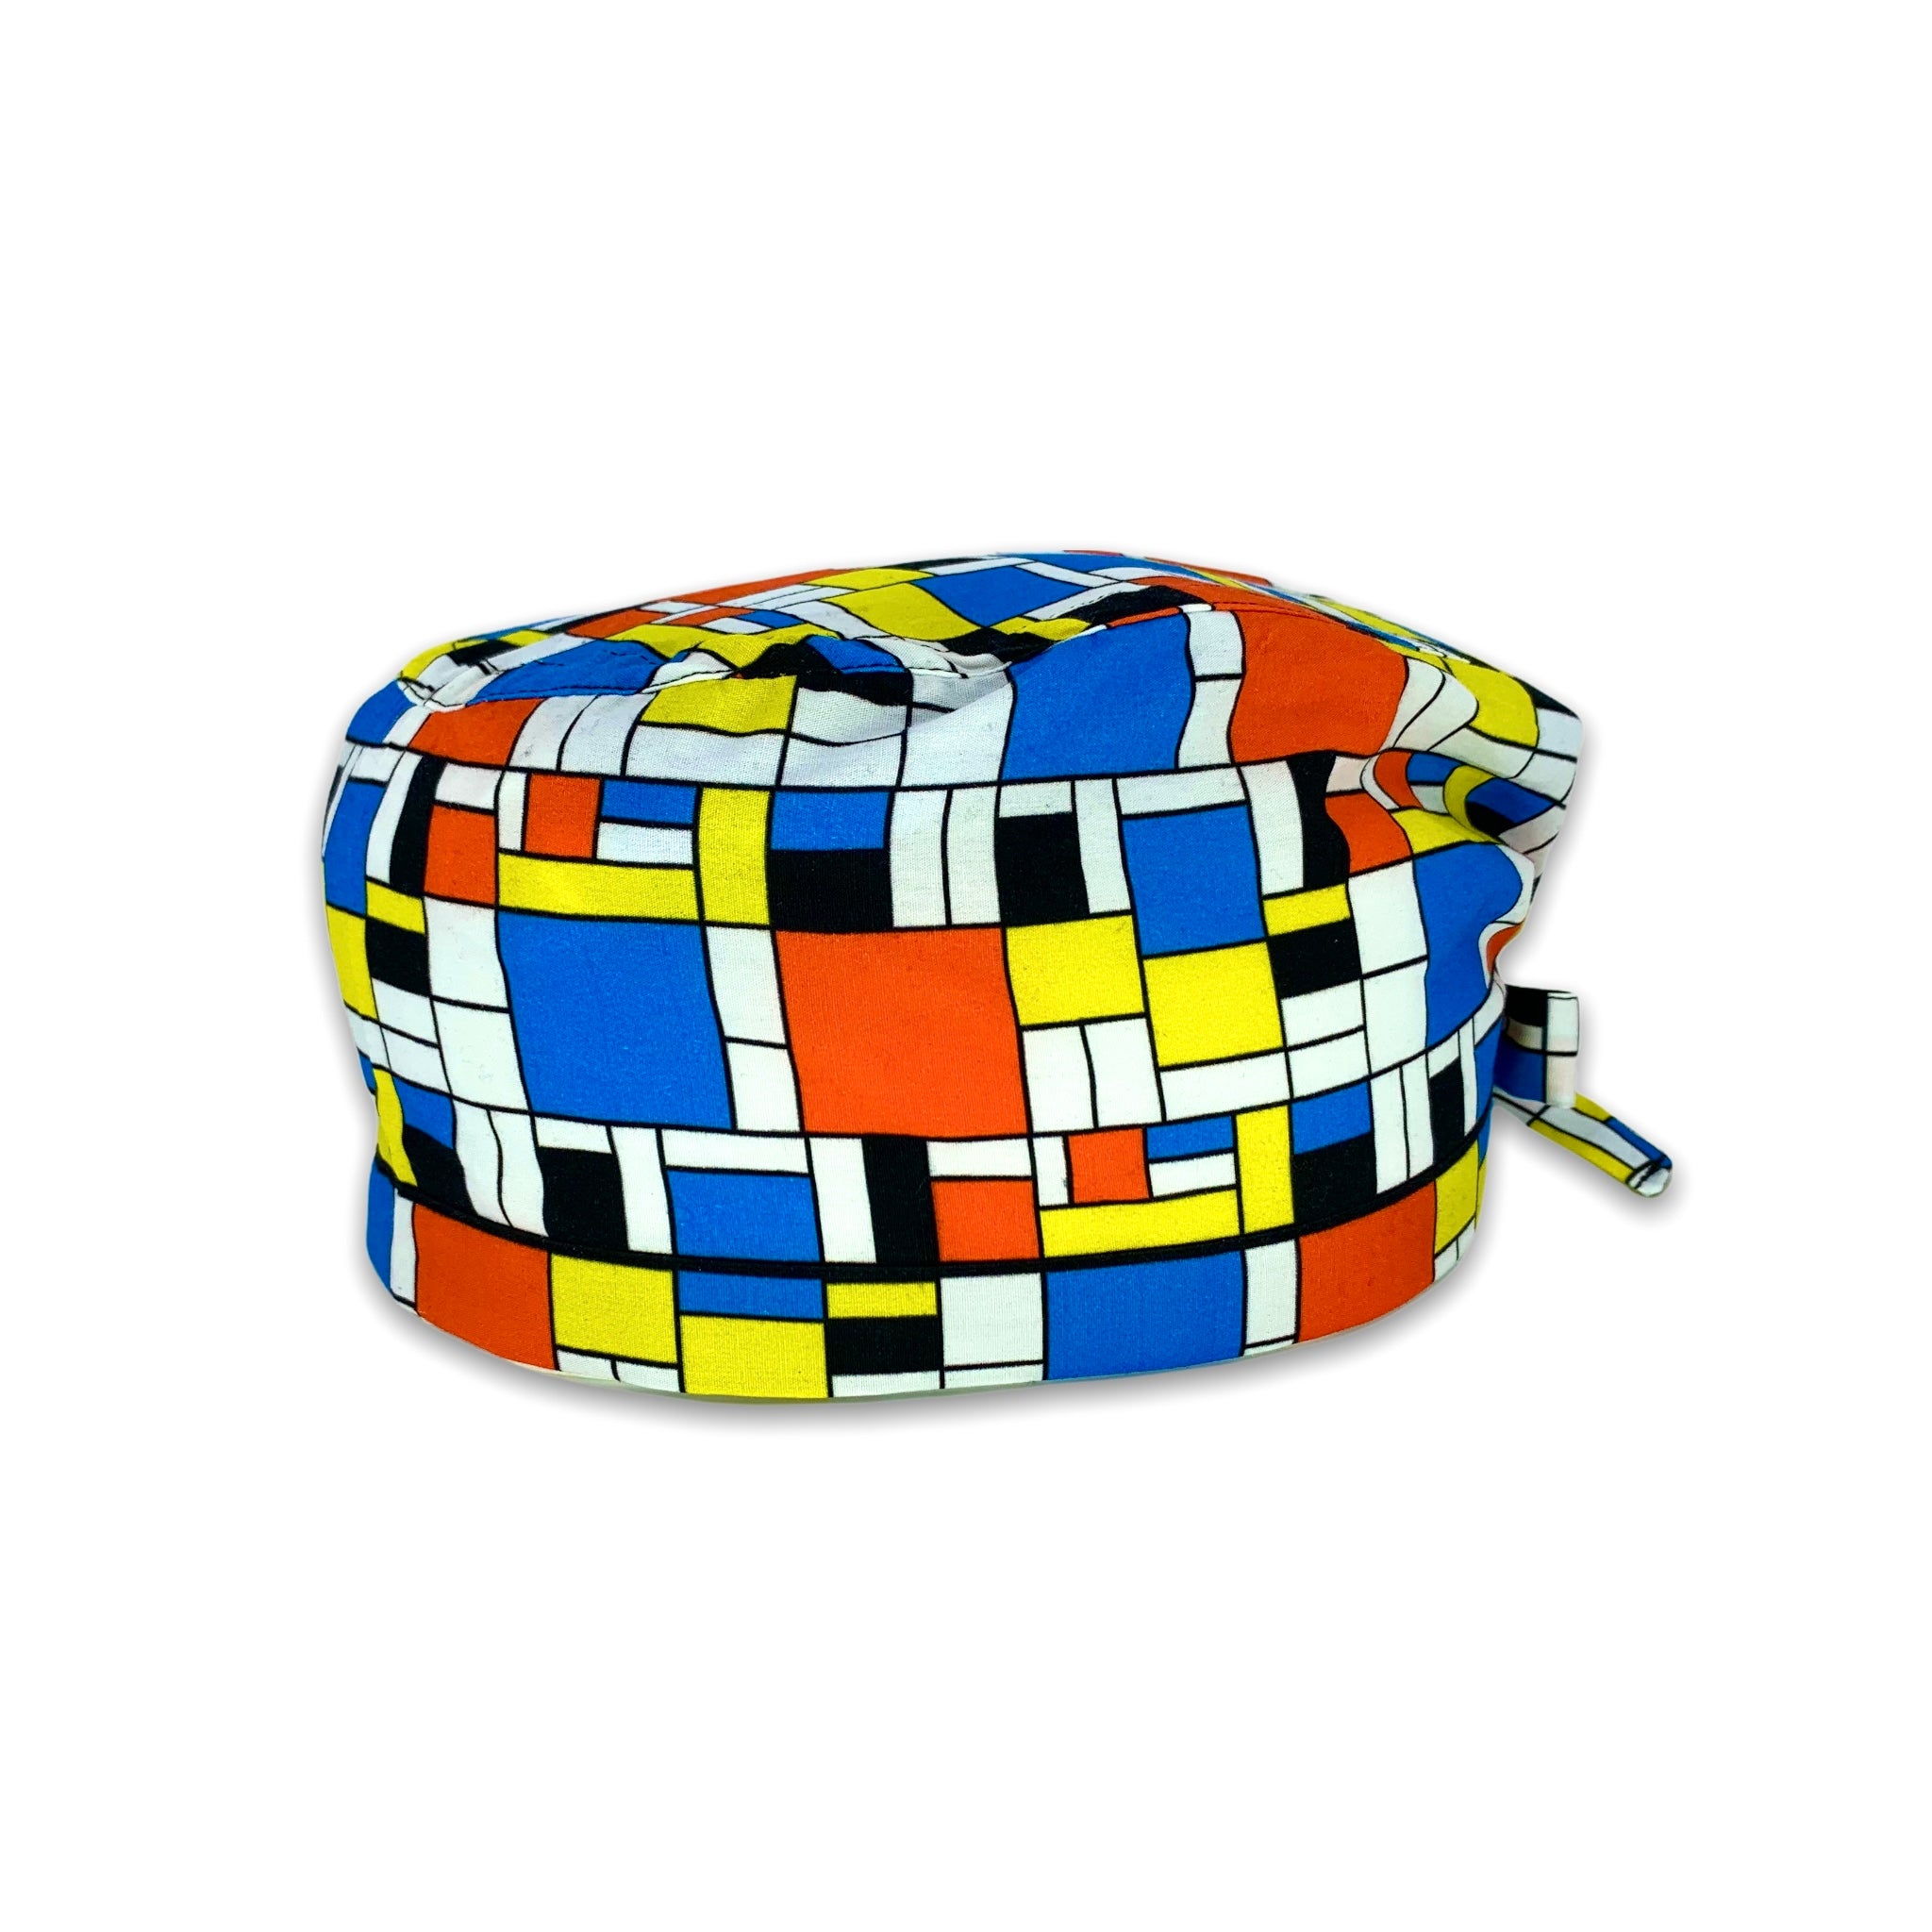 Cuffietta chirurgica che riproduce i disegni geometrici dei quadi di Mondrian, con i colori caratteristici blu, rosso, giallo e nero su  sfondo bianco